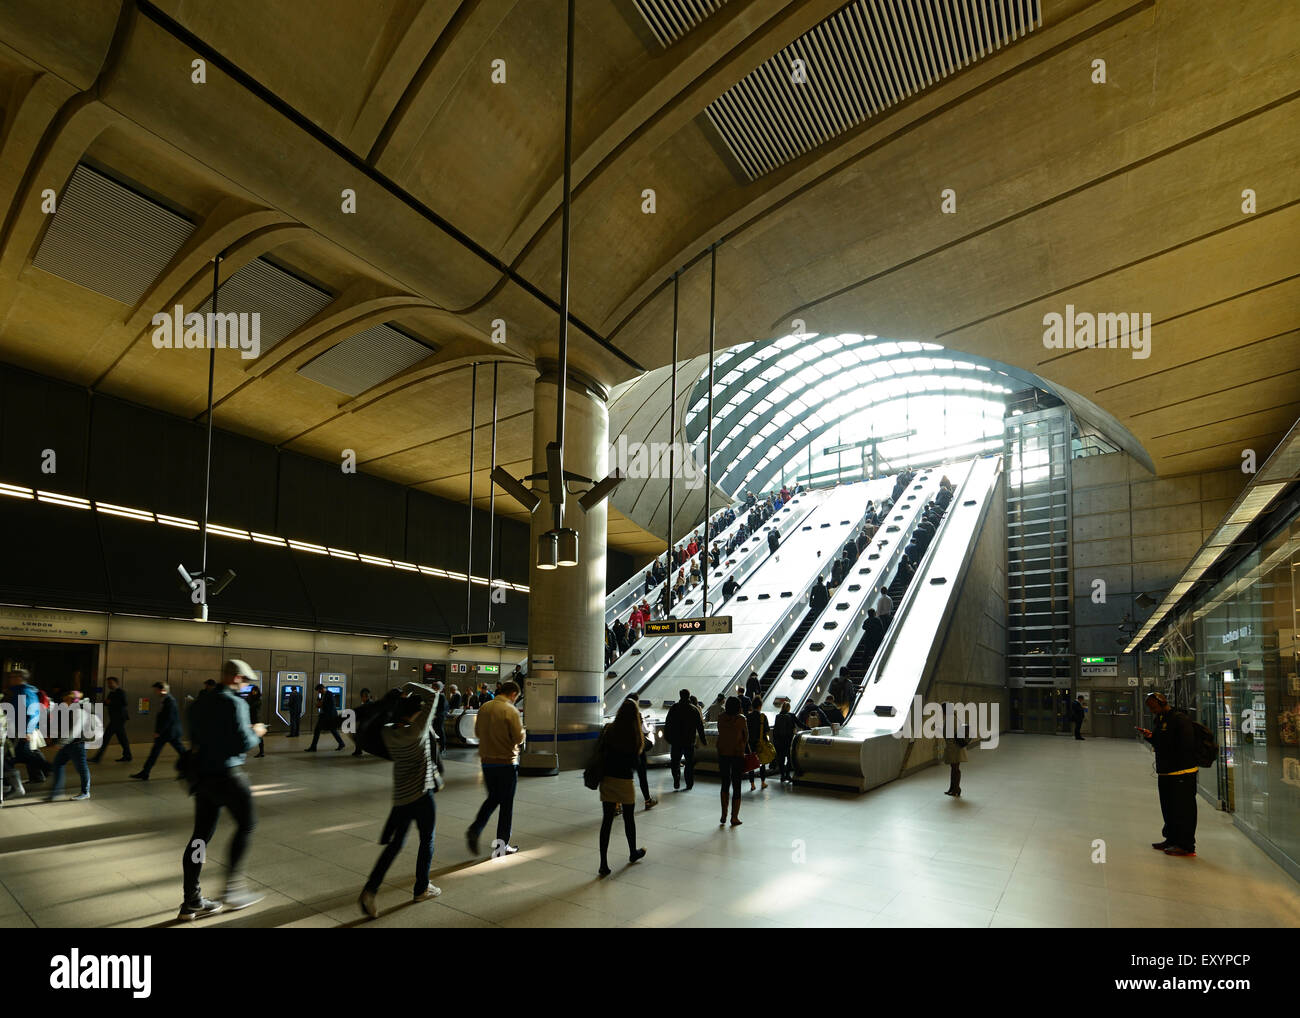 Entrance to Canary Wharf Underground Station, London, UK. Stock Photo